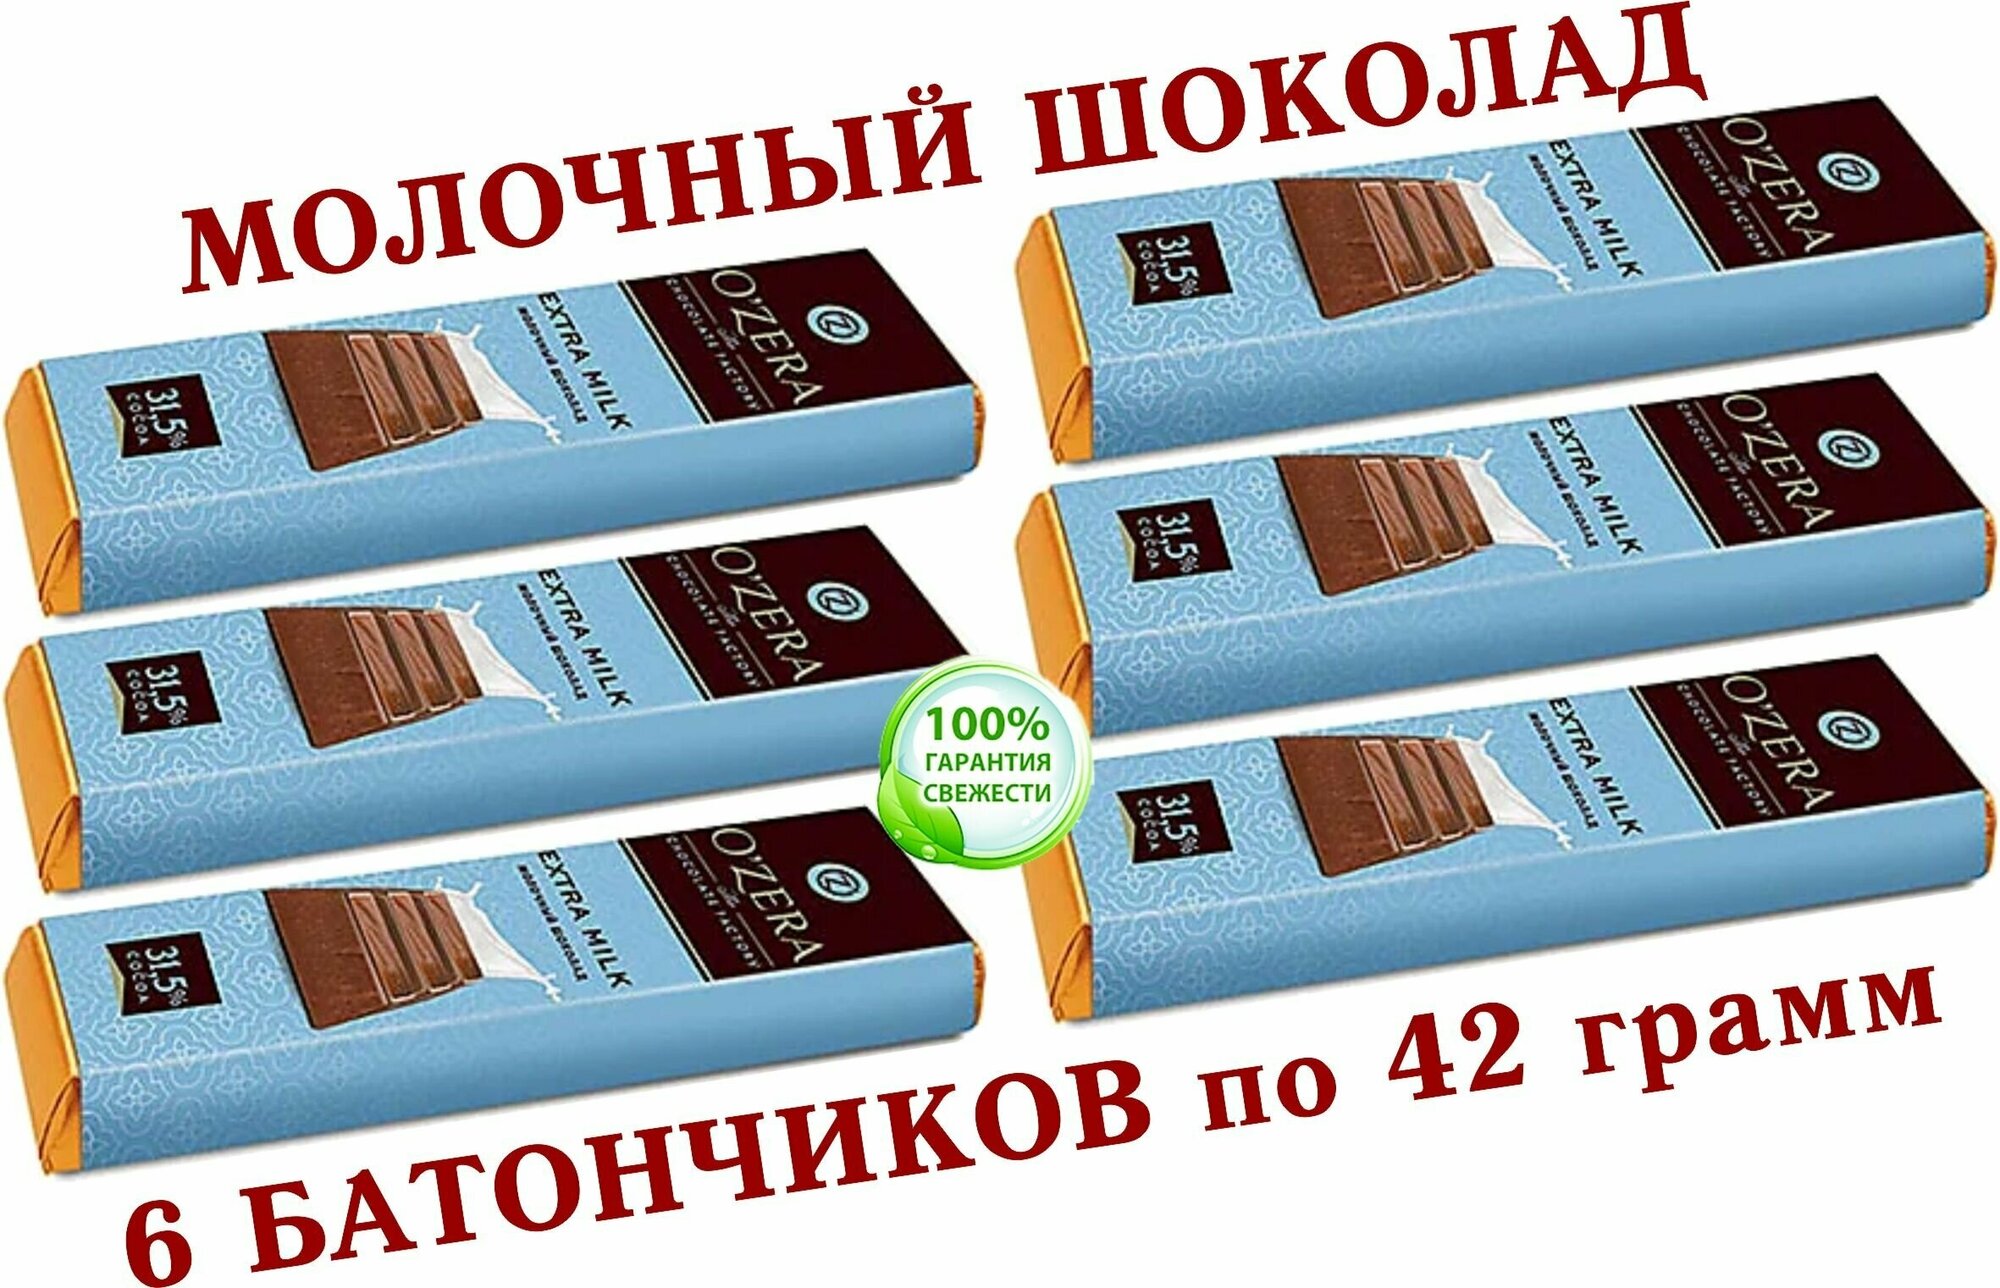 Шоколадный батончик "OZera", (KDV) шоколад молочный Extra milk, "Озерский сувенир" - 6 штук по 42 грамма